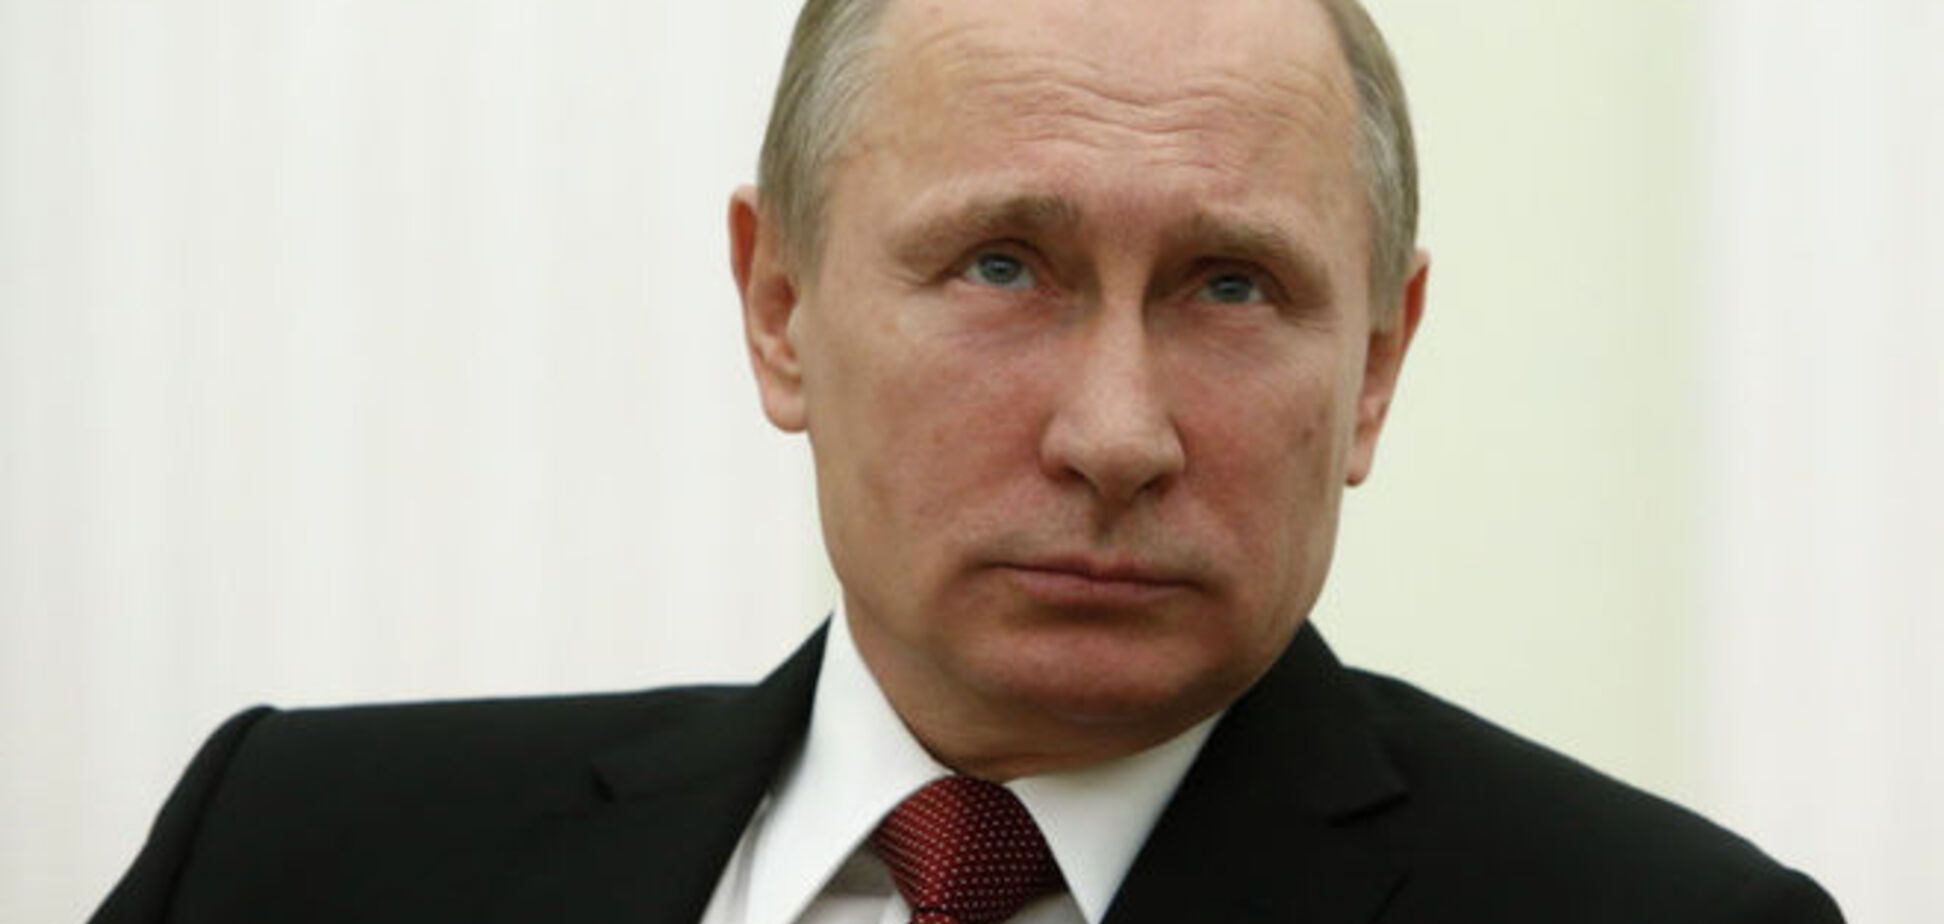 Великобритания предаст огласке финансовые секреты Путина